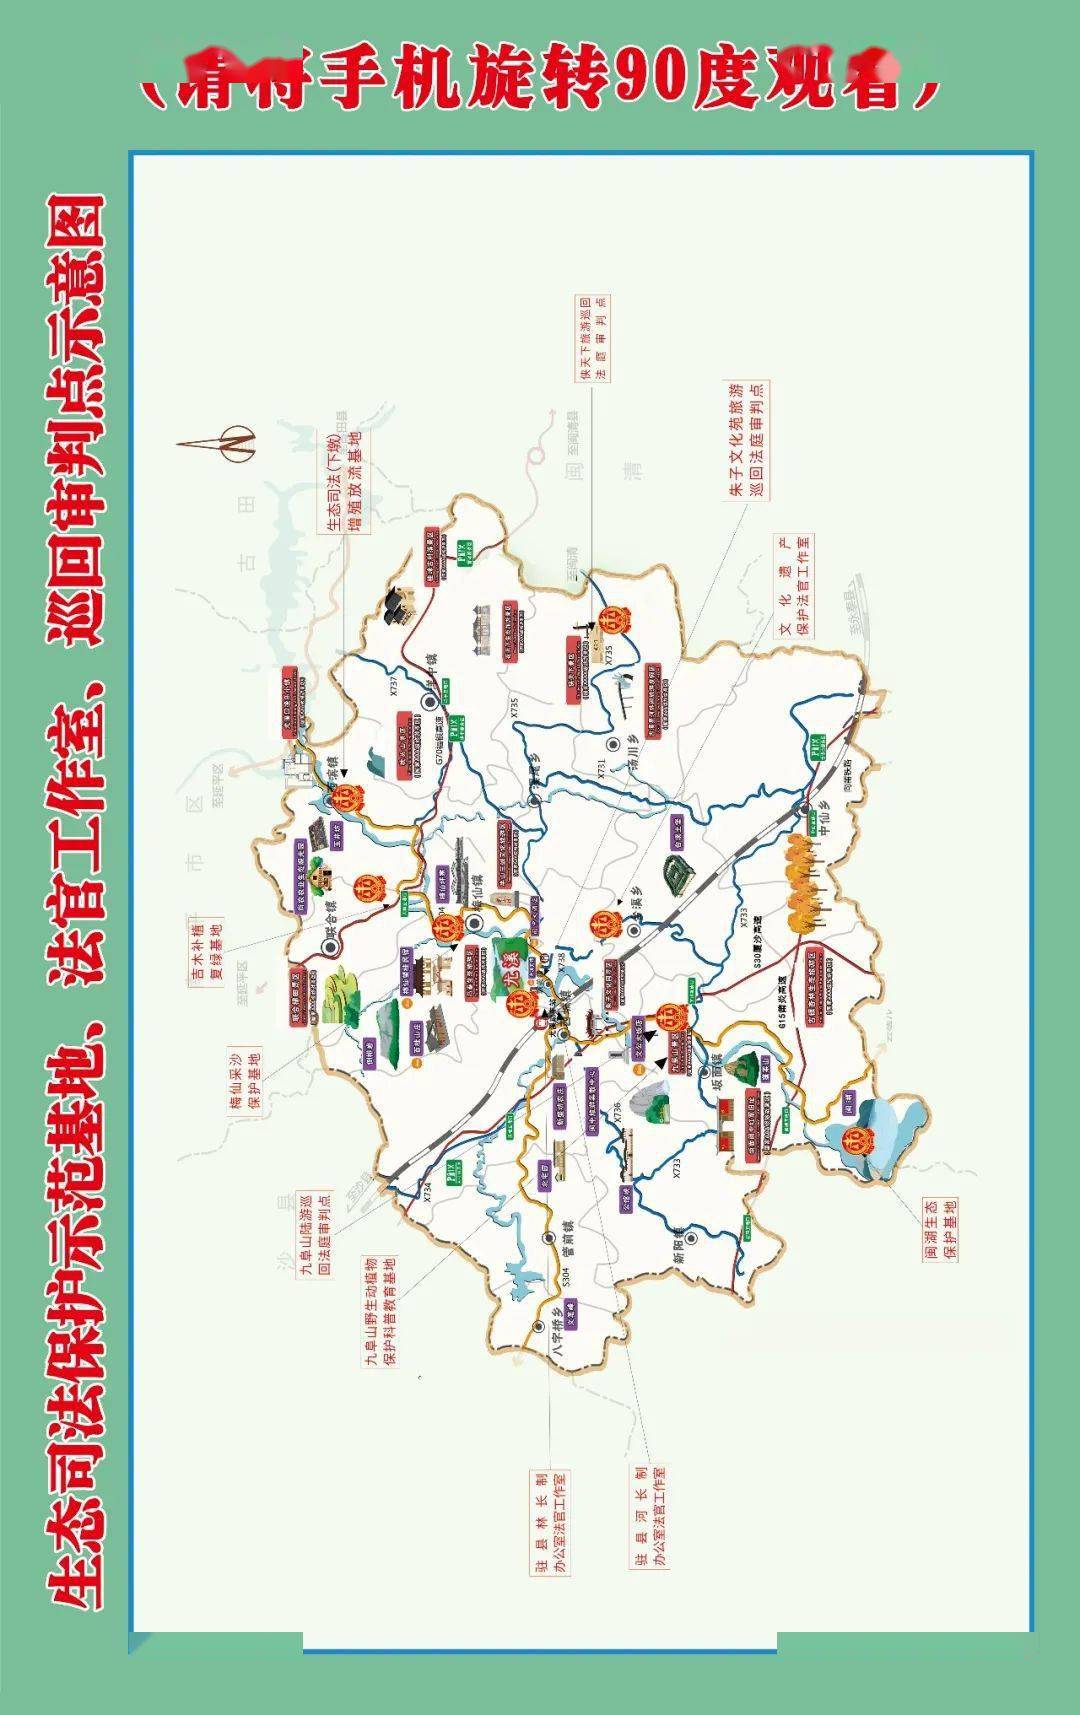 尤溪县各镇地图图片